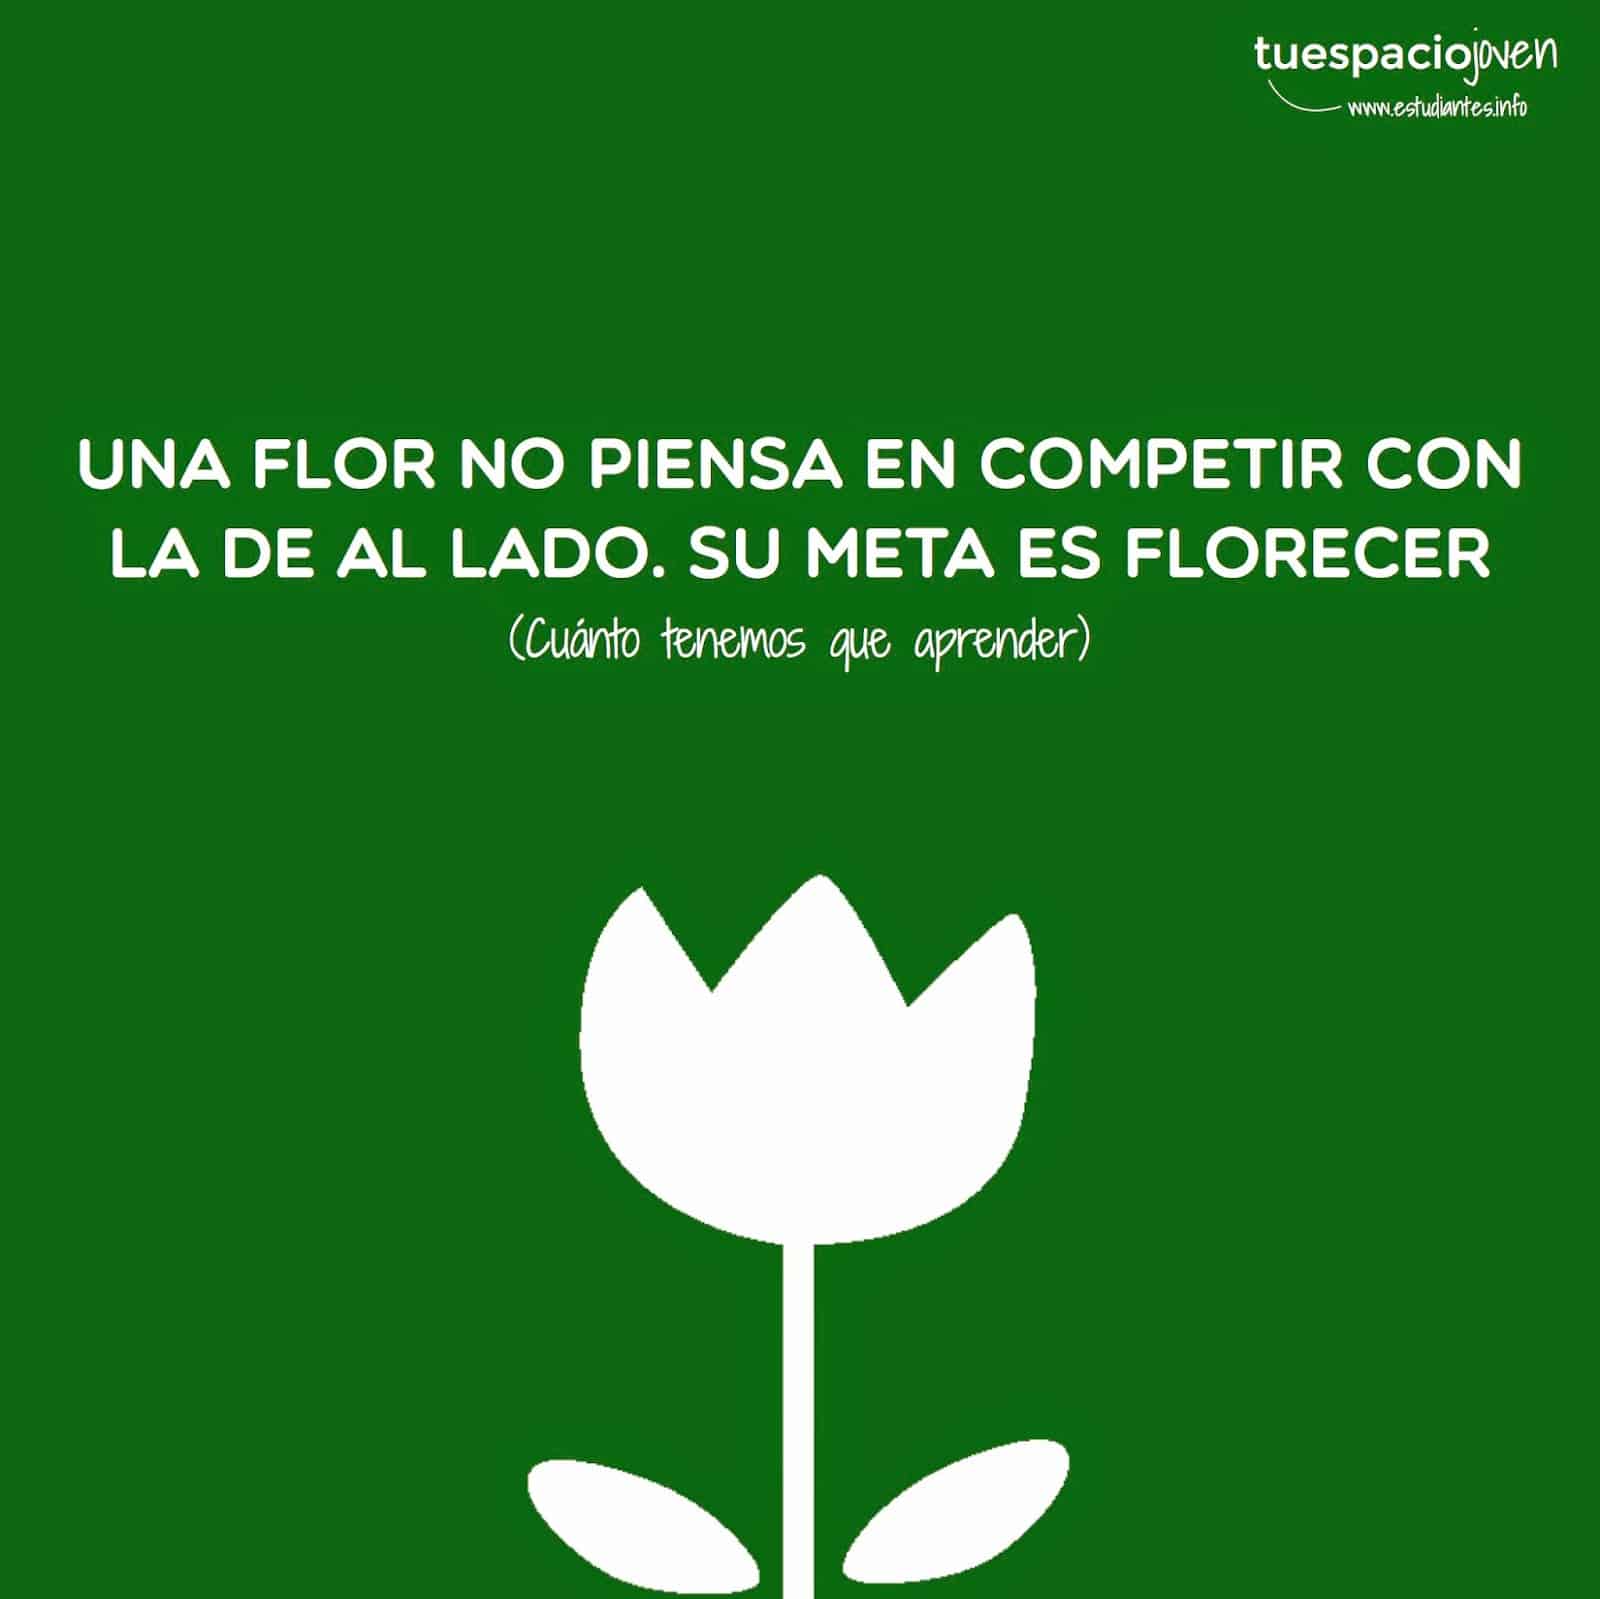 Una flor no piensa en competir, piensa en florecer - Frases y Citas Célebres